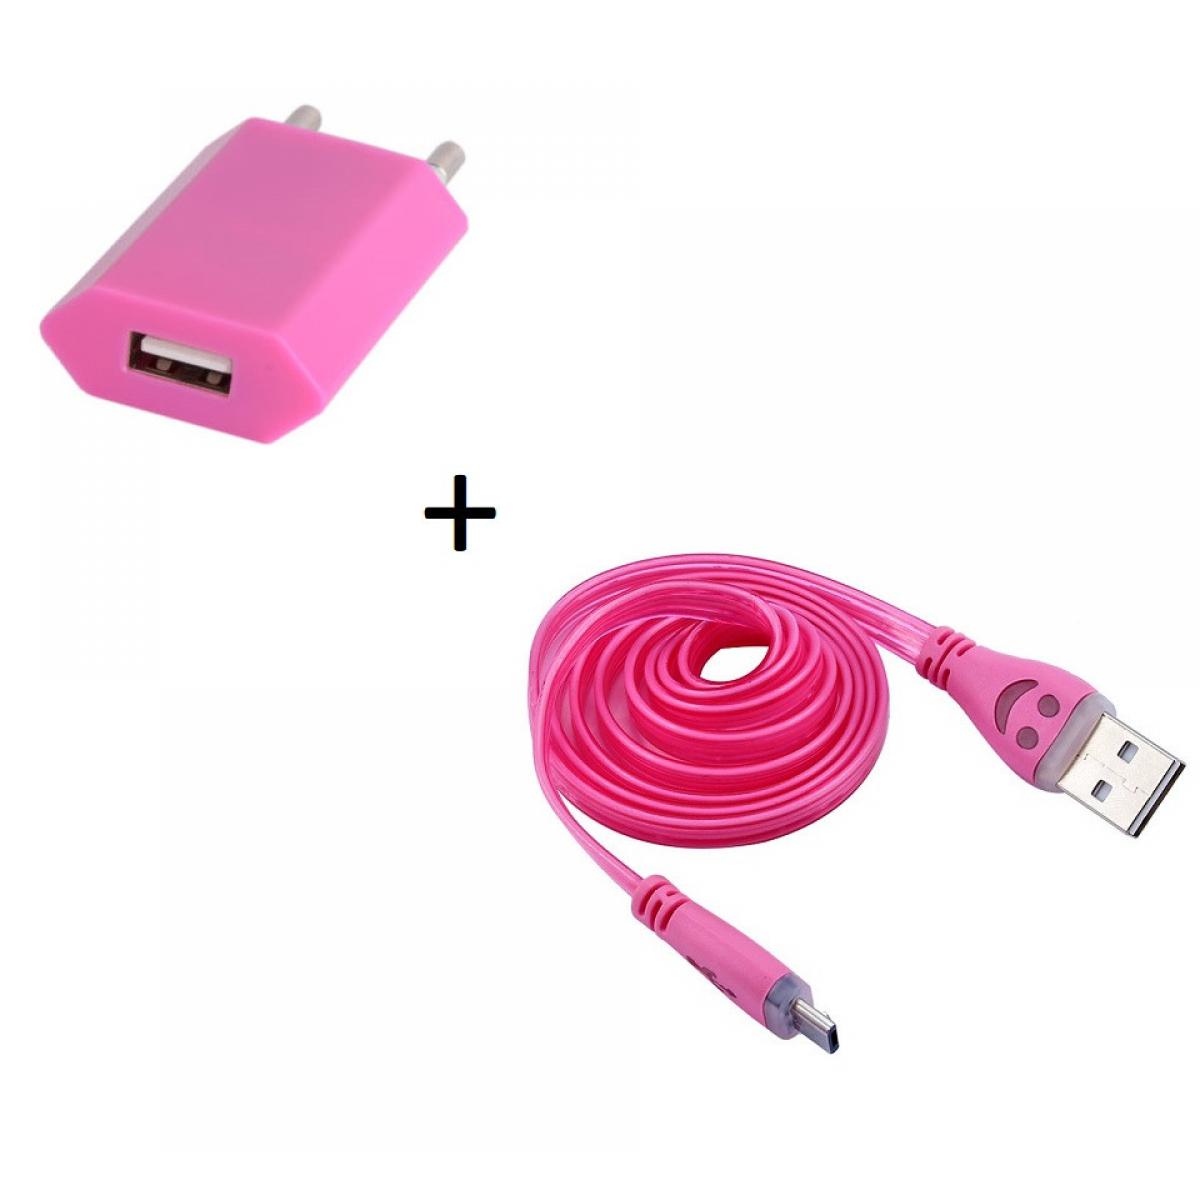 Shot - Pack Chargeur pour ALCATEL 1 2019 Smartphone Micro USB (Cable Smiley LED + Prise Secteur USB) Android (ROSE BONBON) - Chargeur secteur téléphone